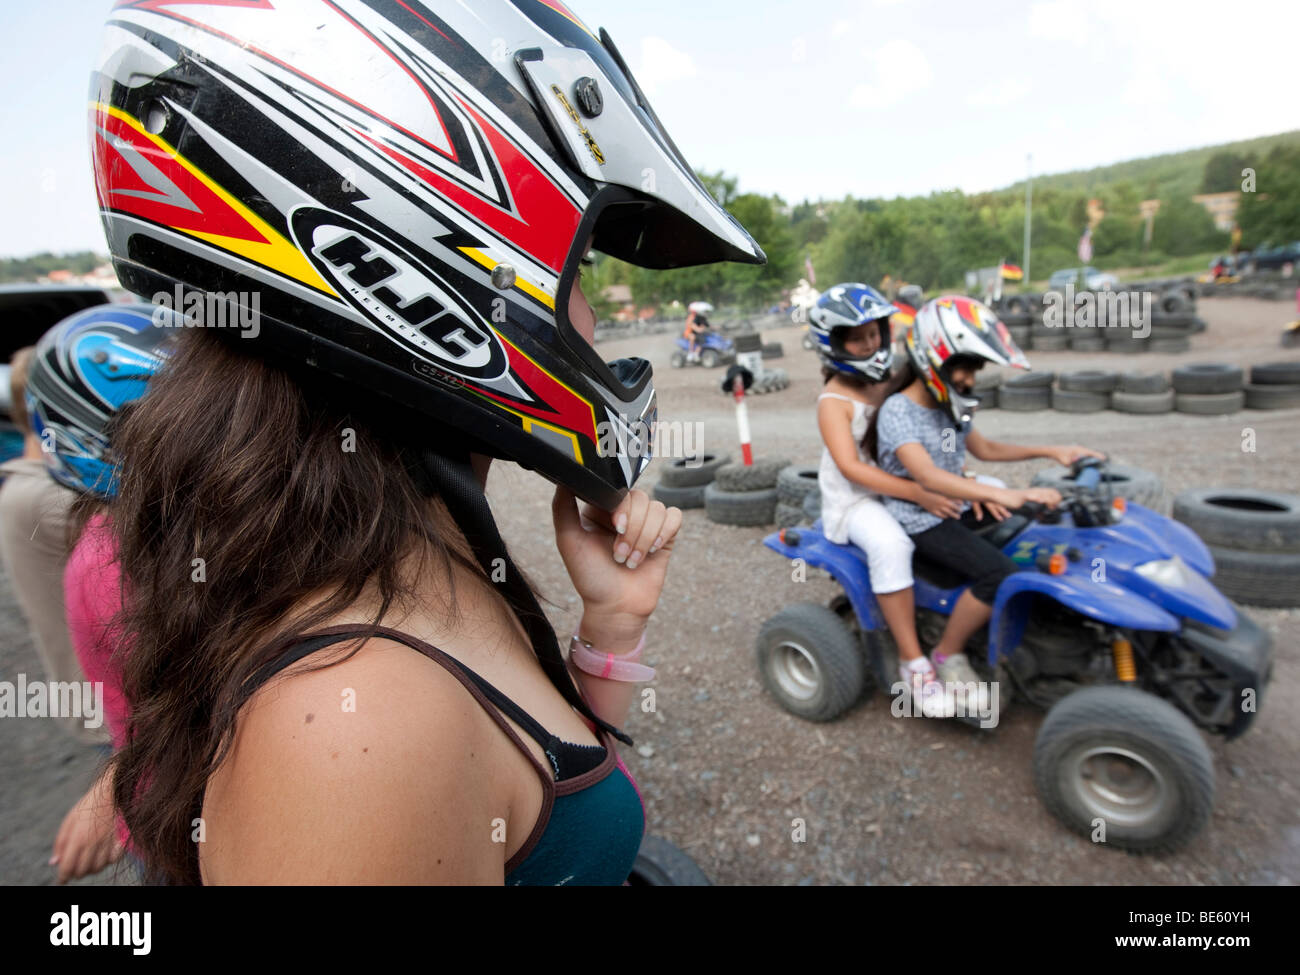 Mädchen, etwa 16 Jahre alt, einen Helm zu tragen, mit Blick auf ein Quad-Parcours,  Kinder reiten, Quad-Bikes, Hessen, Deutschland, Europa Stockfotografie -  Alamy